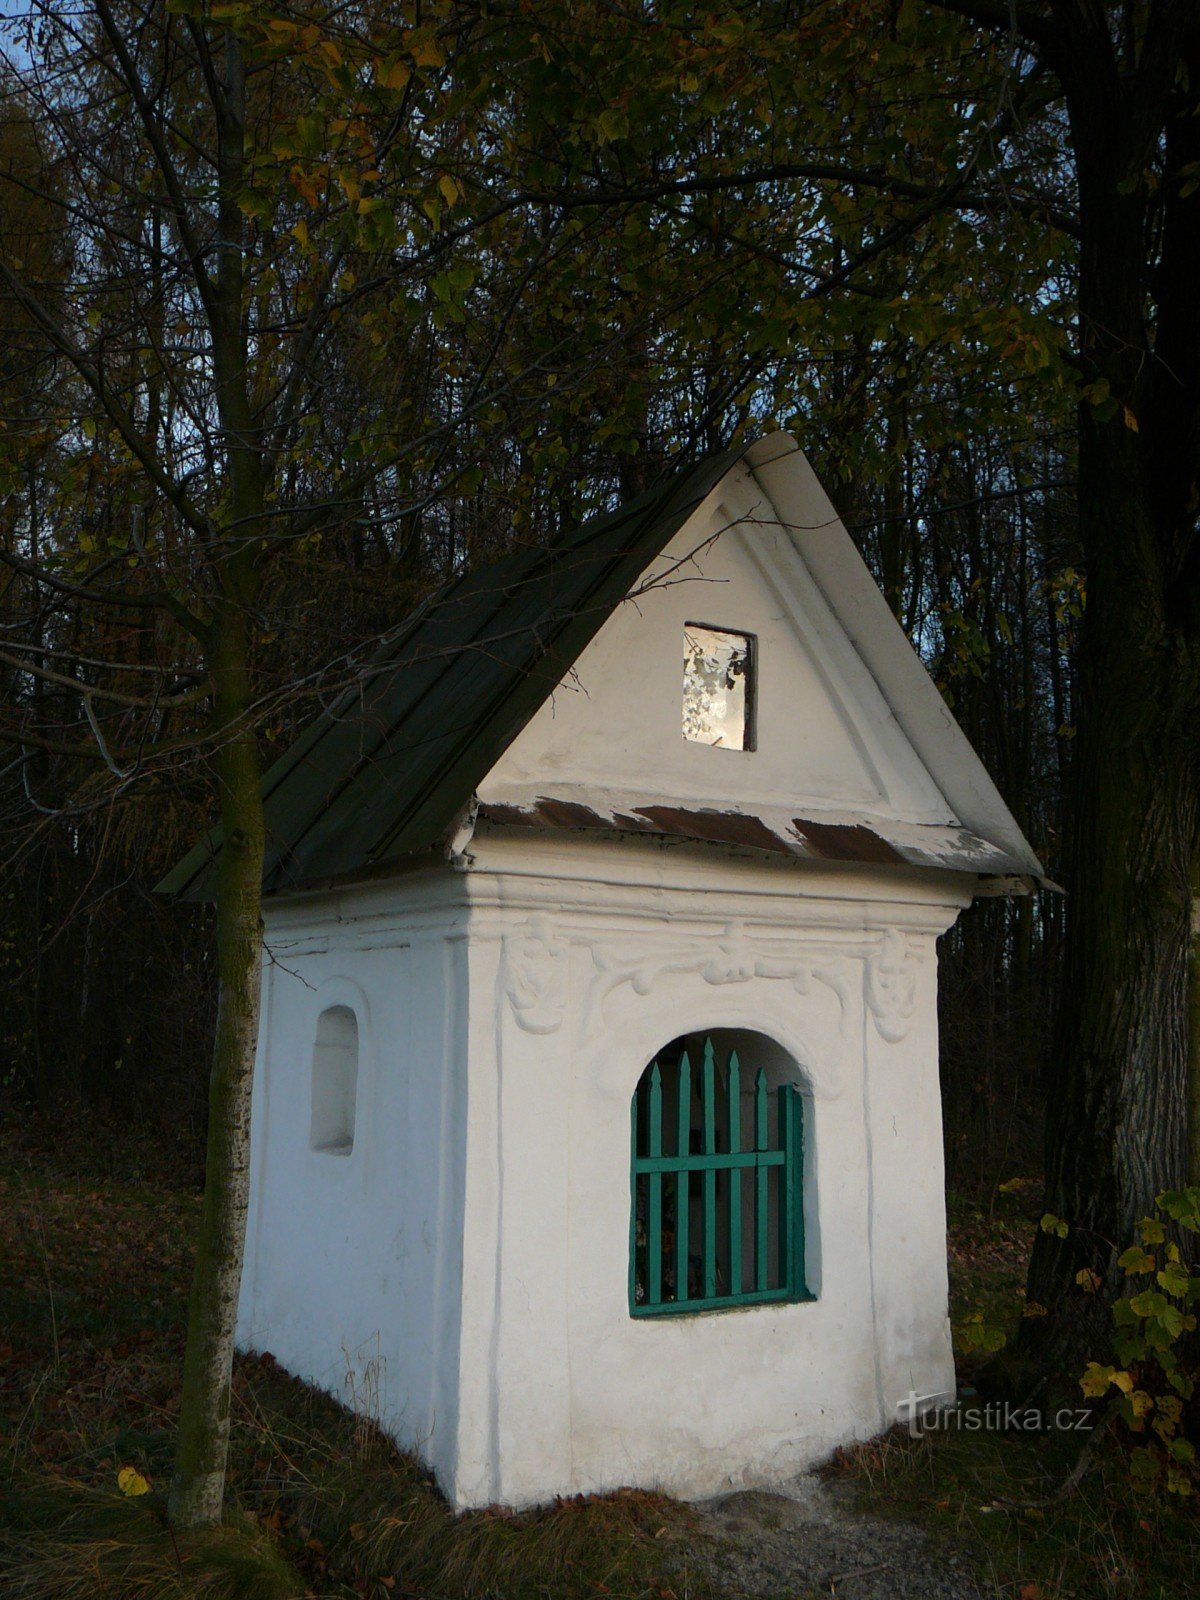 Nhà nguyện thánh Anthony ở Lískovec